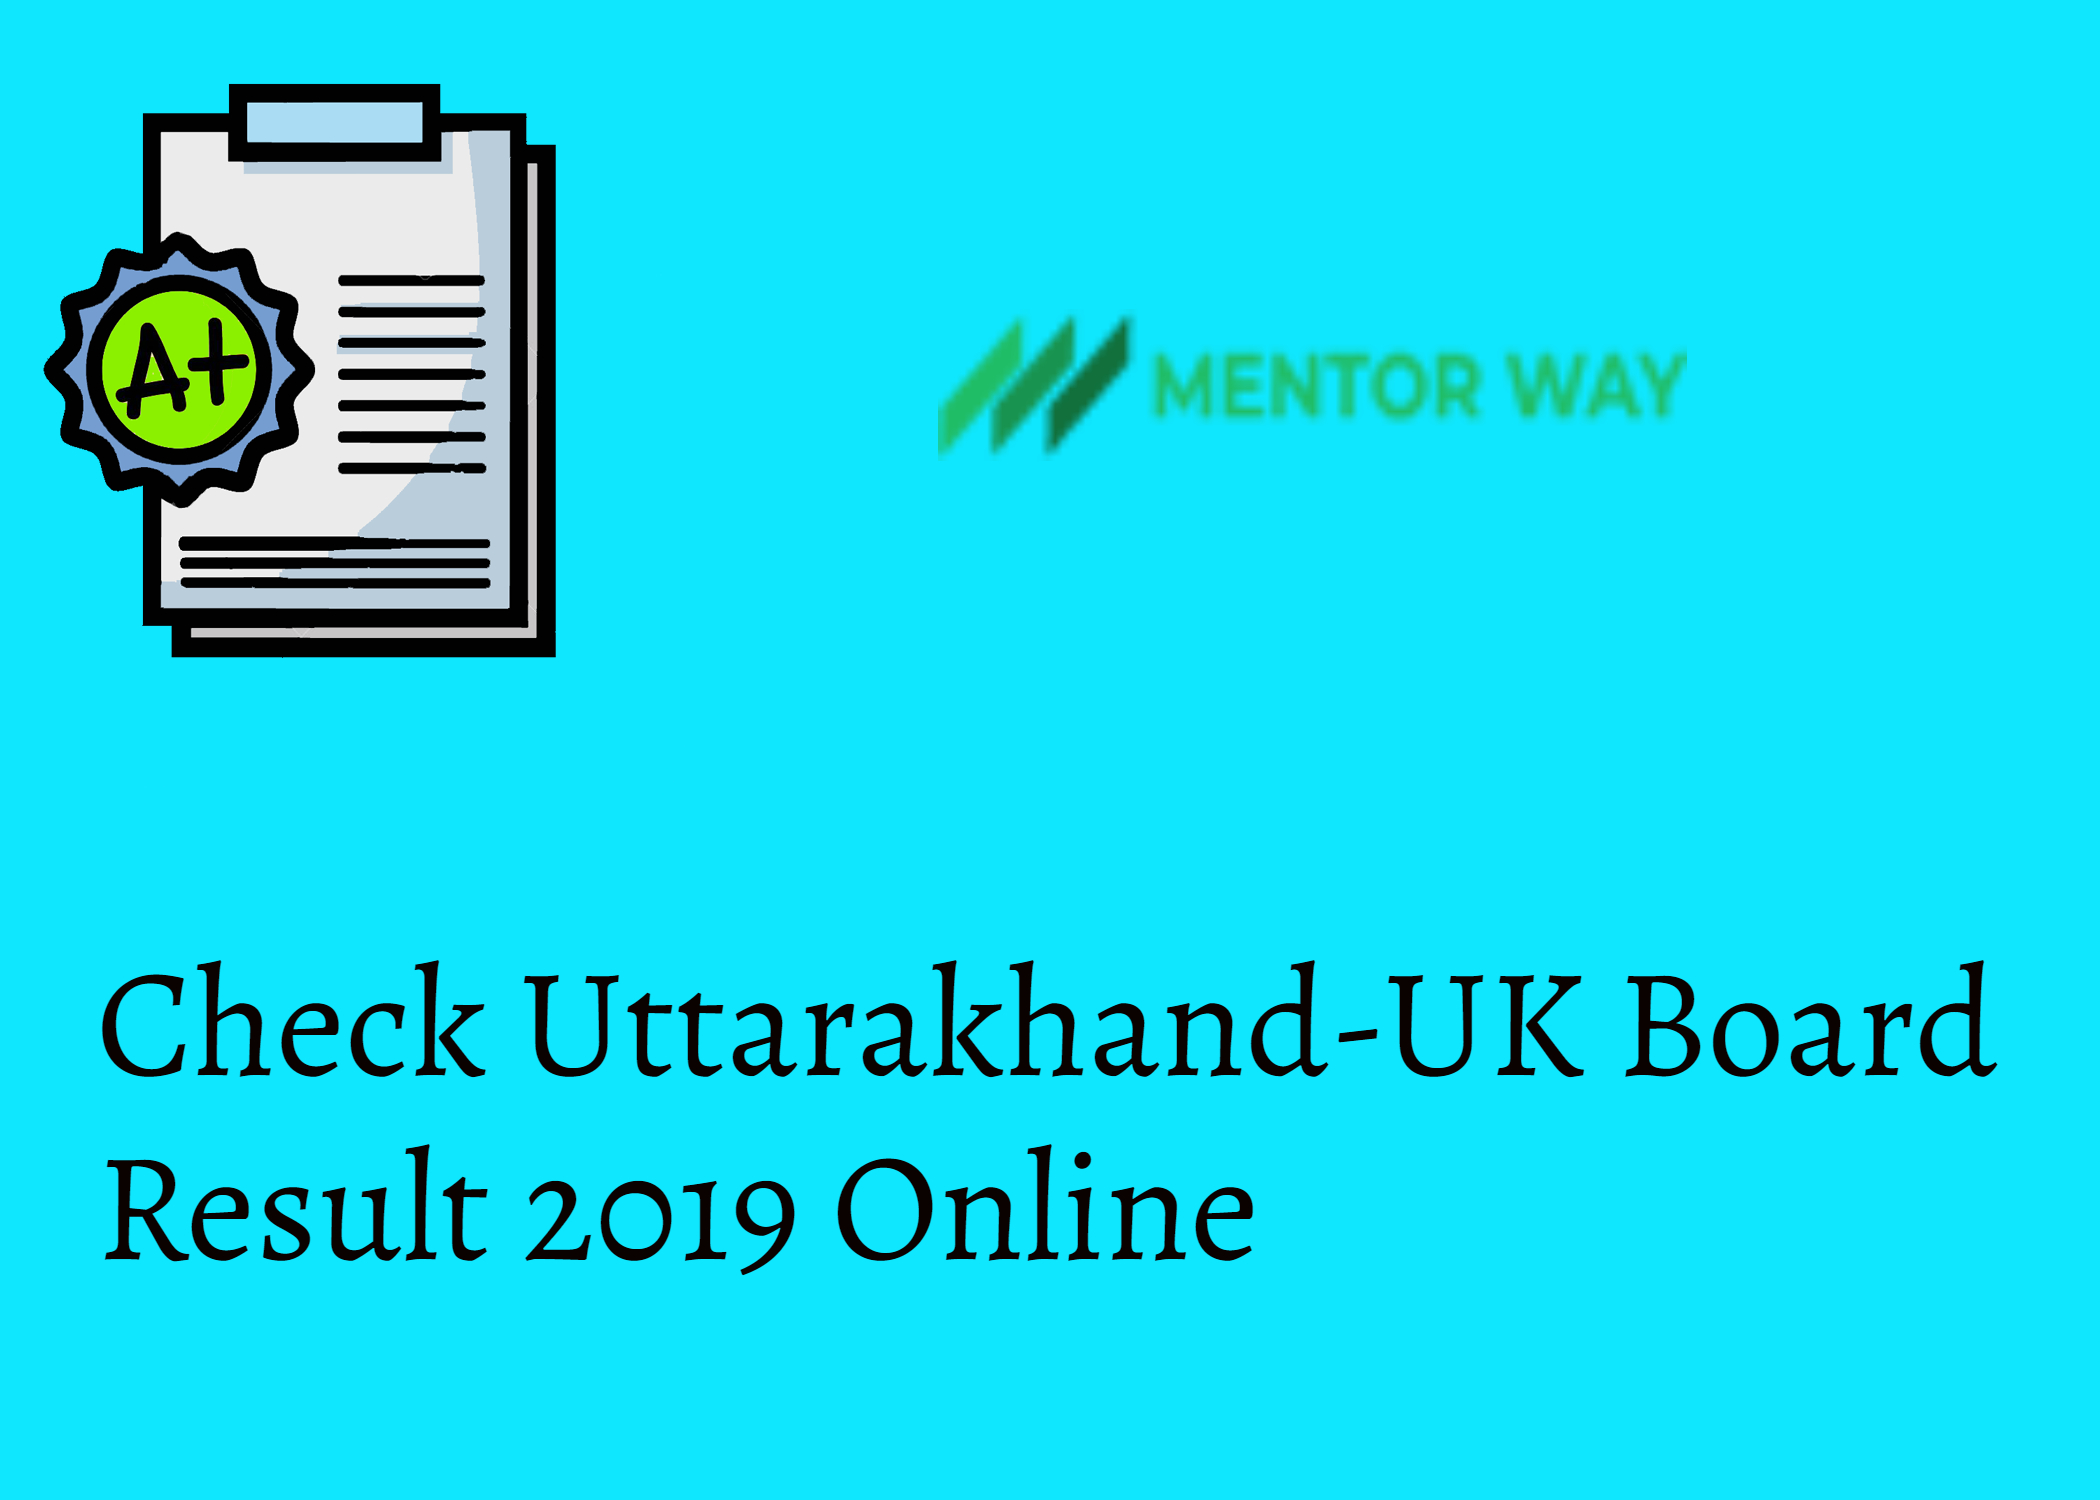 Check Uttarakhand-UK Board Result 2019 Online